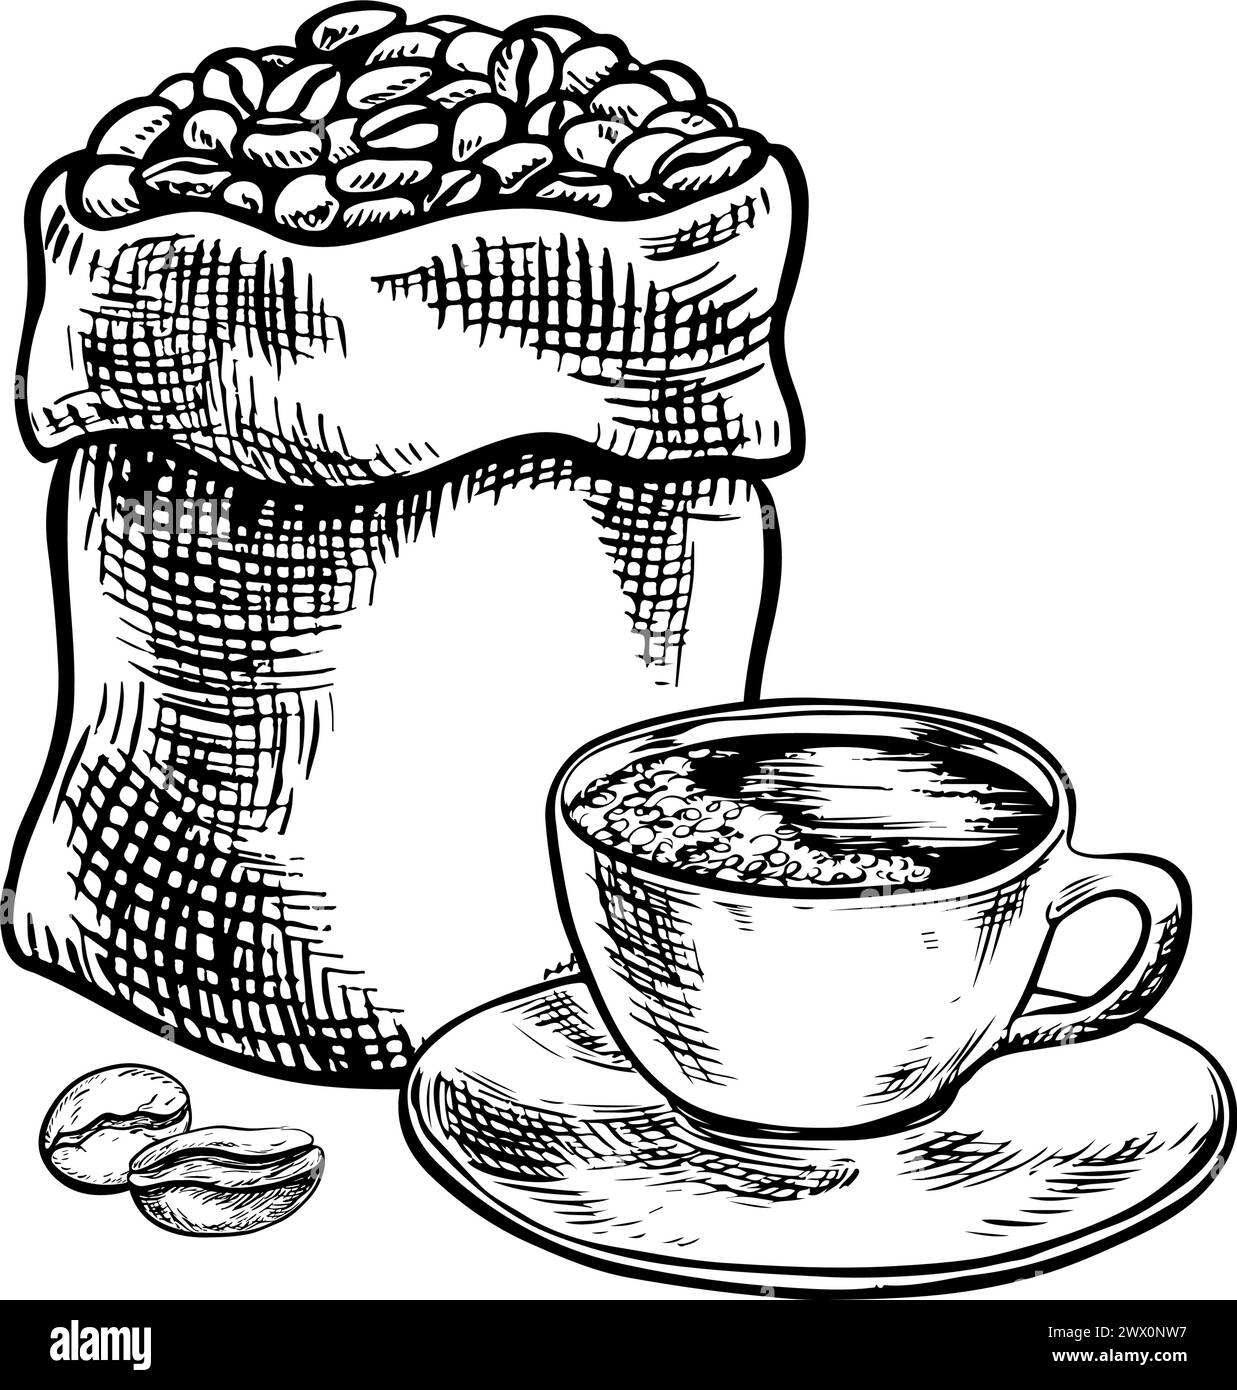 Ein Sack gefüllt mit Kaffeebohnen und einer Tasse Kaffee, schwarz-weiße Vektorgrafik Illustration. Für Verpackungen, Logos und Etiketten. Für Banner, Flyer Stock Vektor